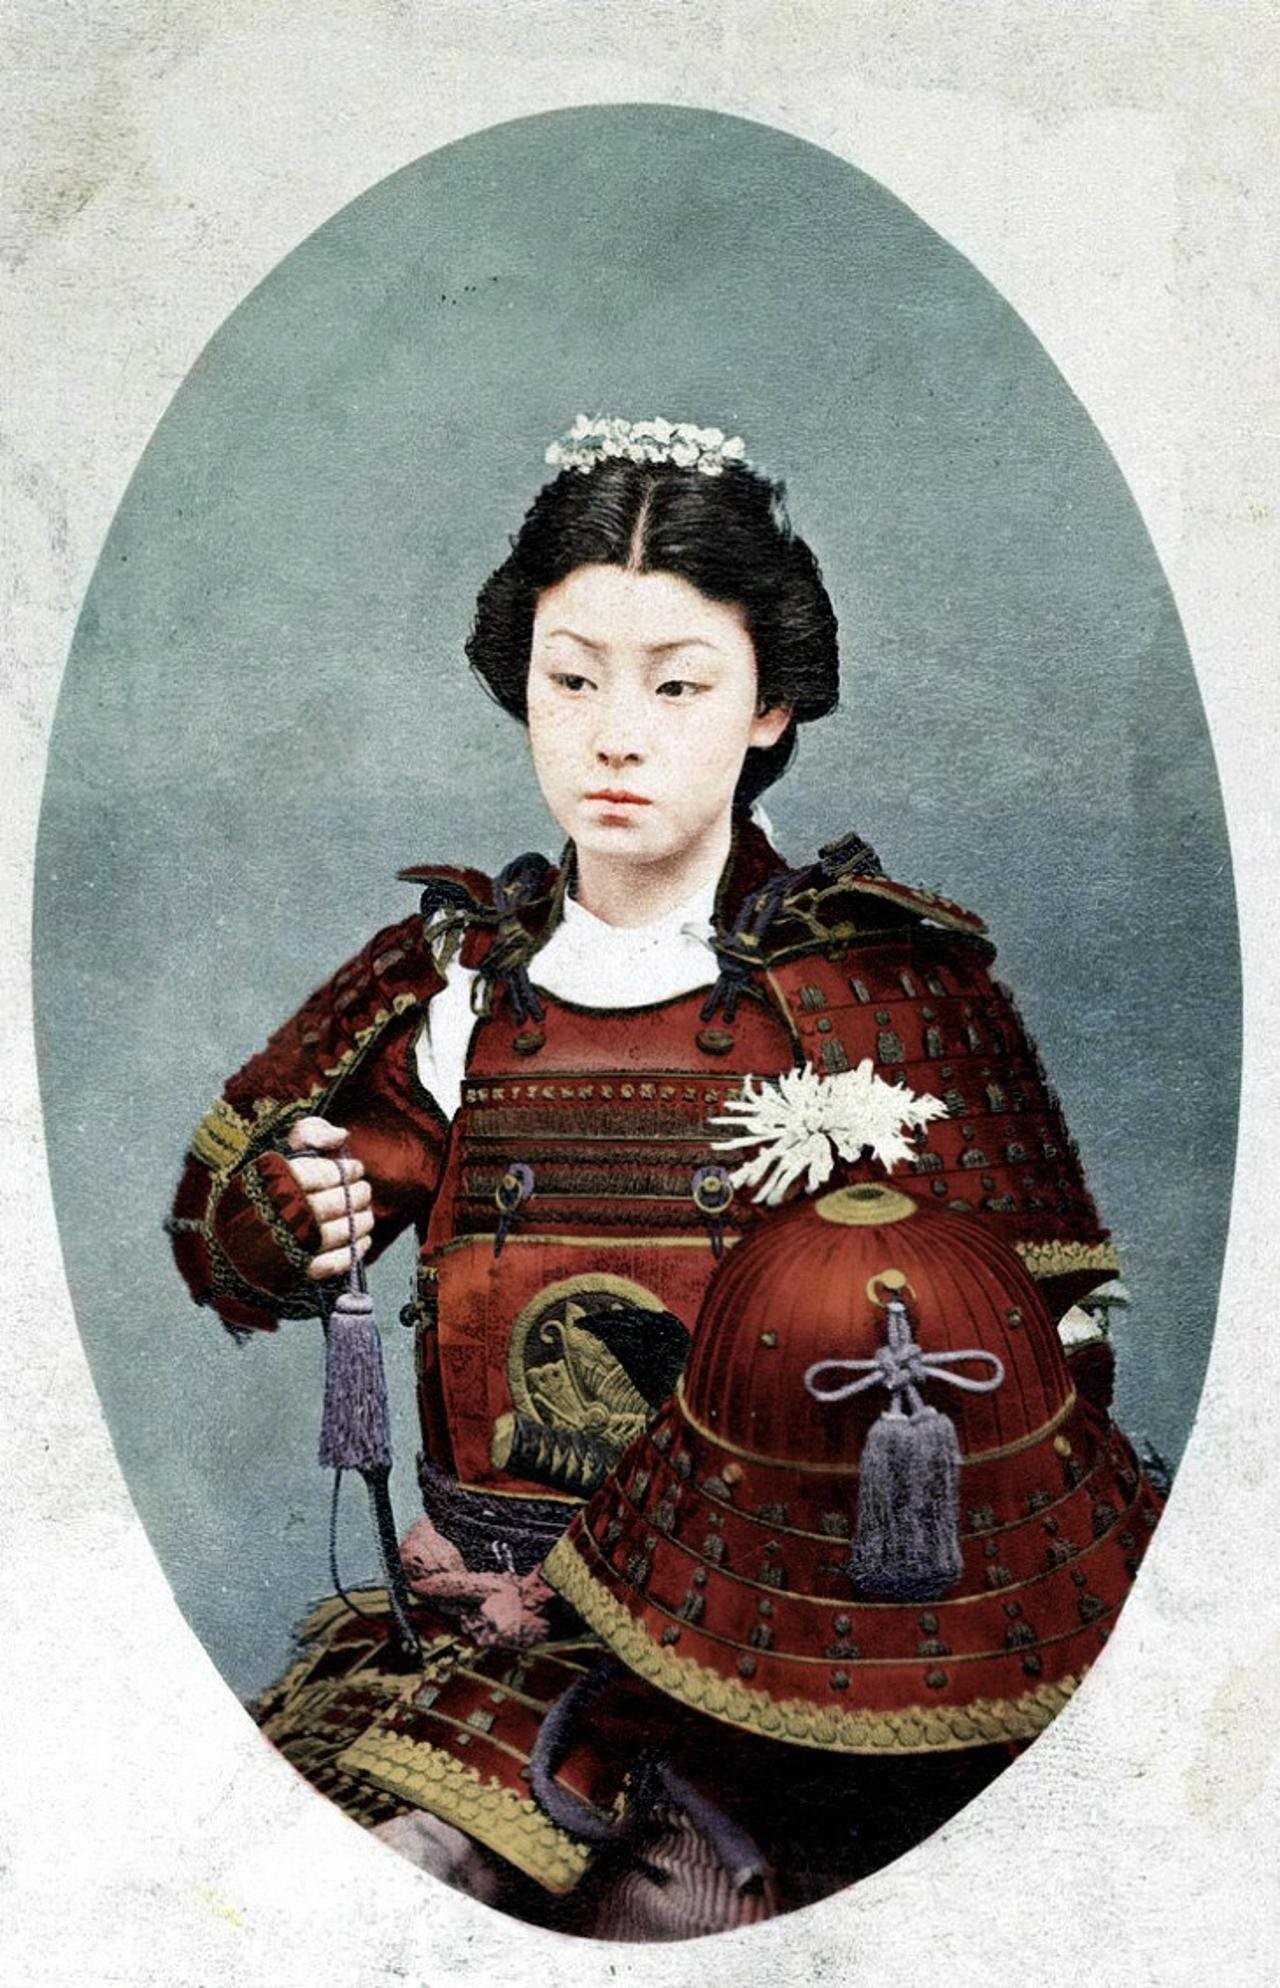 Раскрашенная фотография женщины-самурая конца 1800-х годов